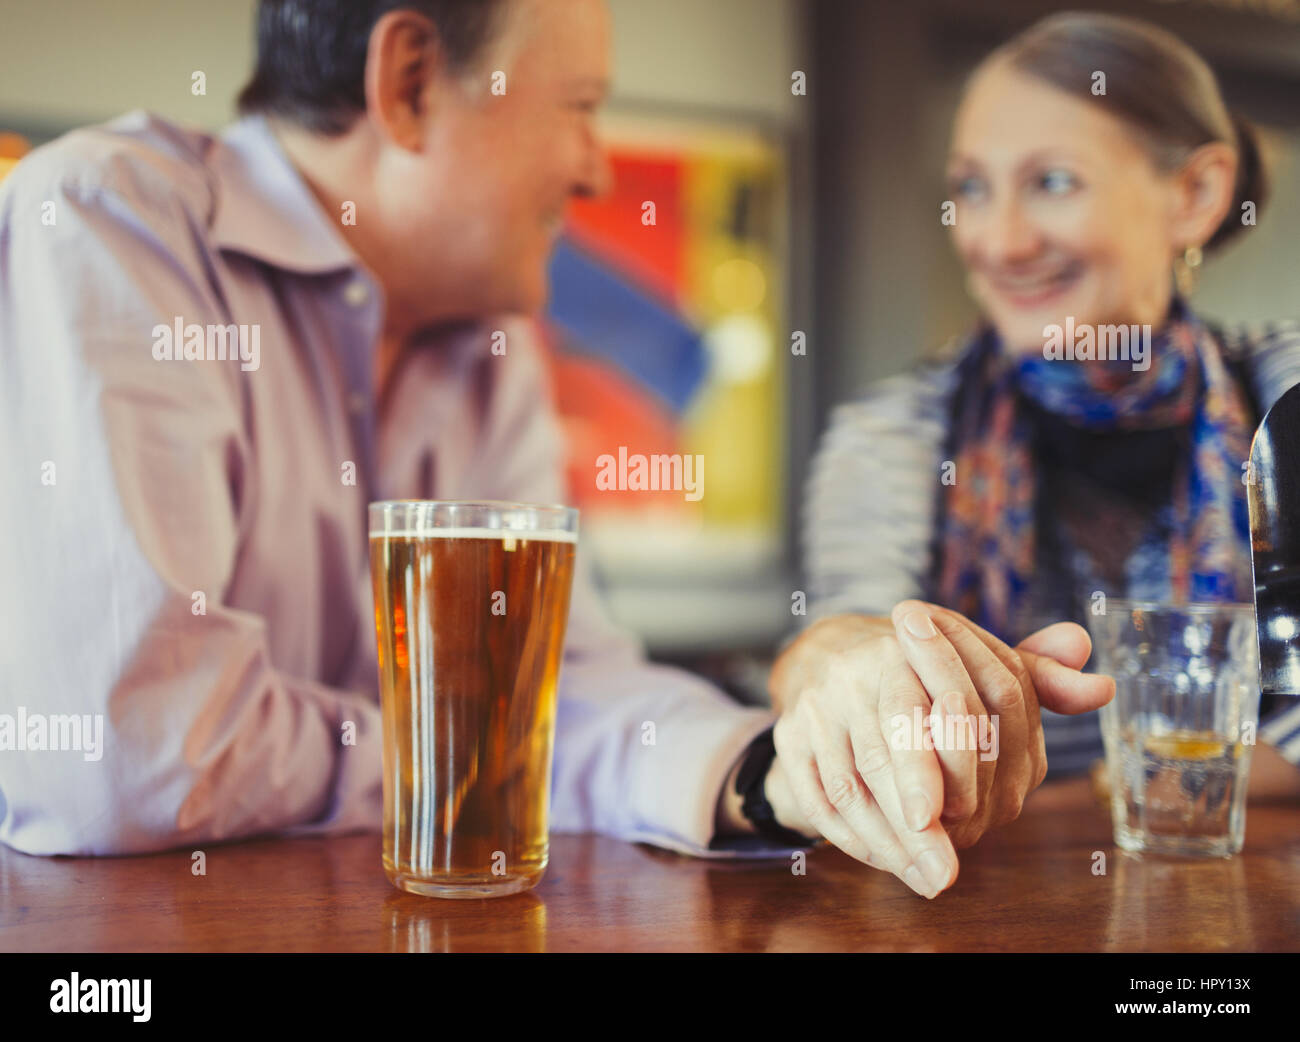 Coppia senior tenendo le mani a bere birra presso il bar Foto Stock